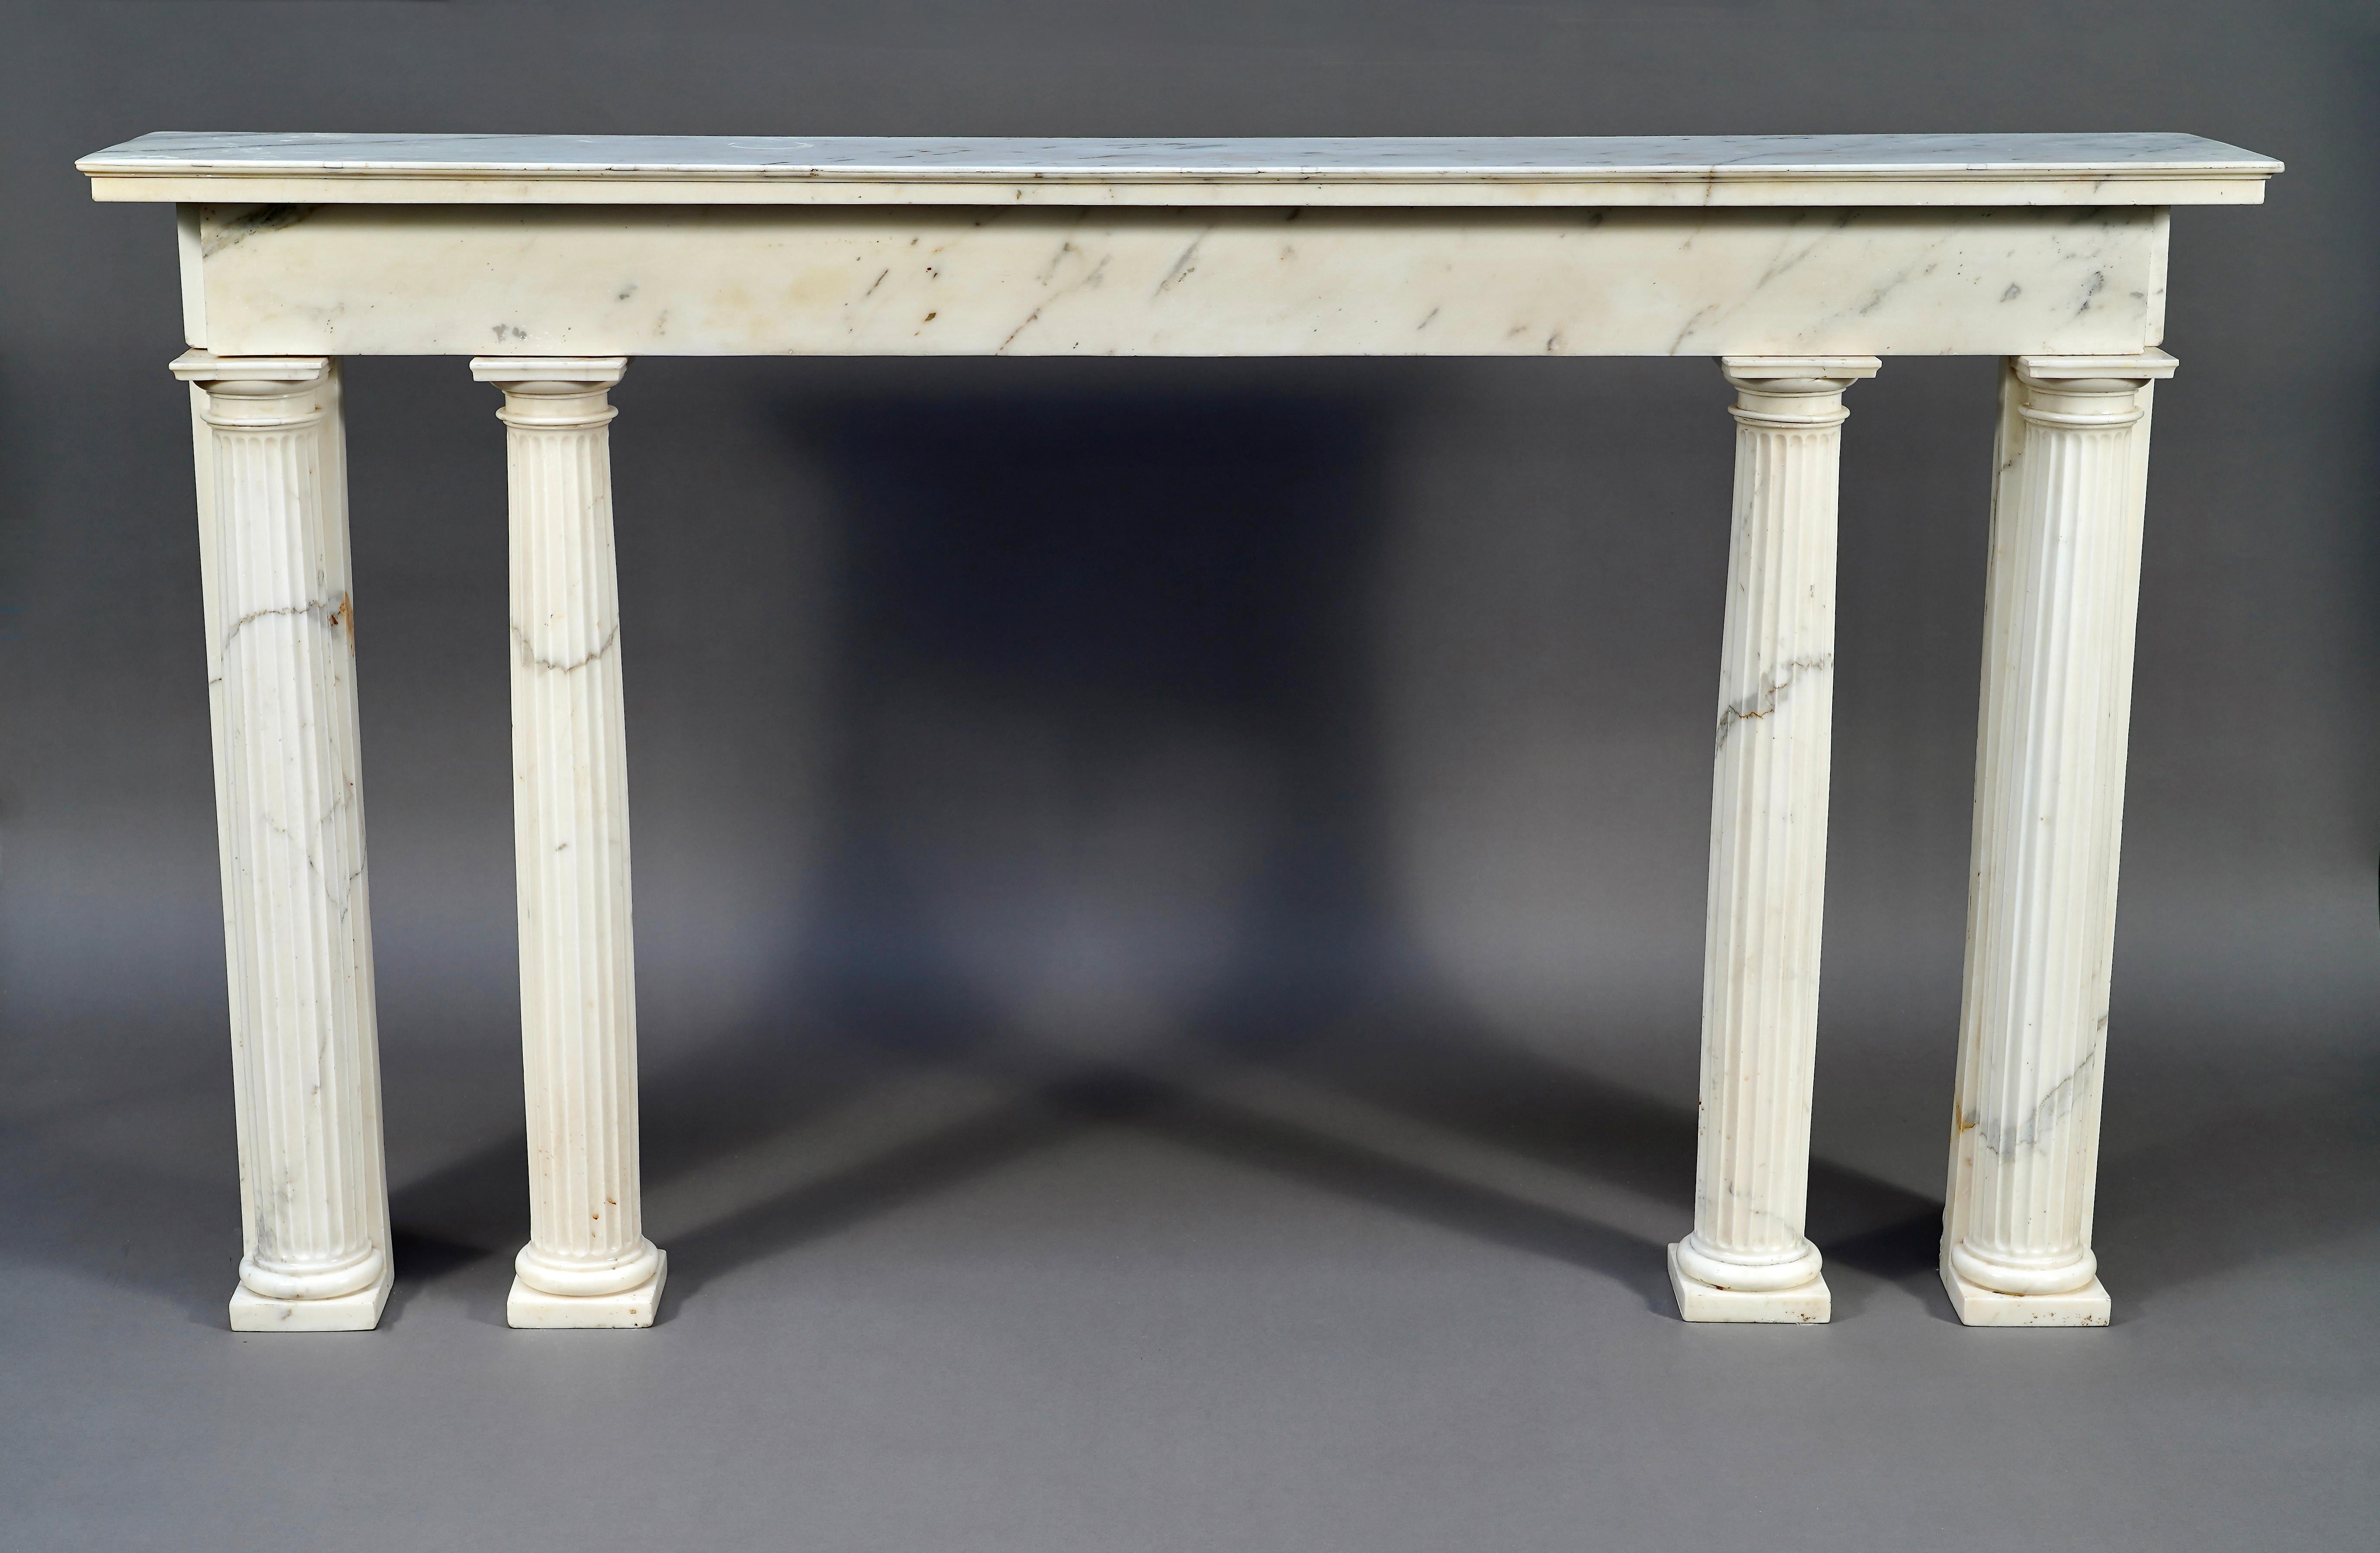 Rara consola neoclásica de época Luis XVI esculpida en mármol blanco de Carrara. El dintel rectangular, coronado por un remate moldurado, está sostenido por cuatro columnas estriadas exentas con capiteles dóricos.

Las líneas rectas y el estilo